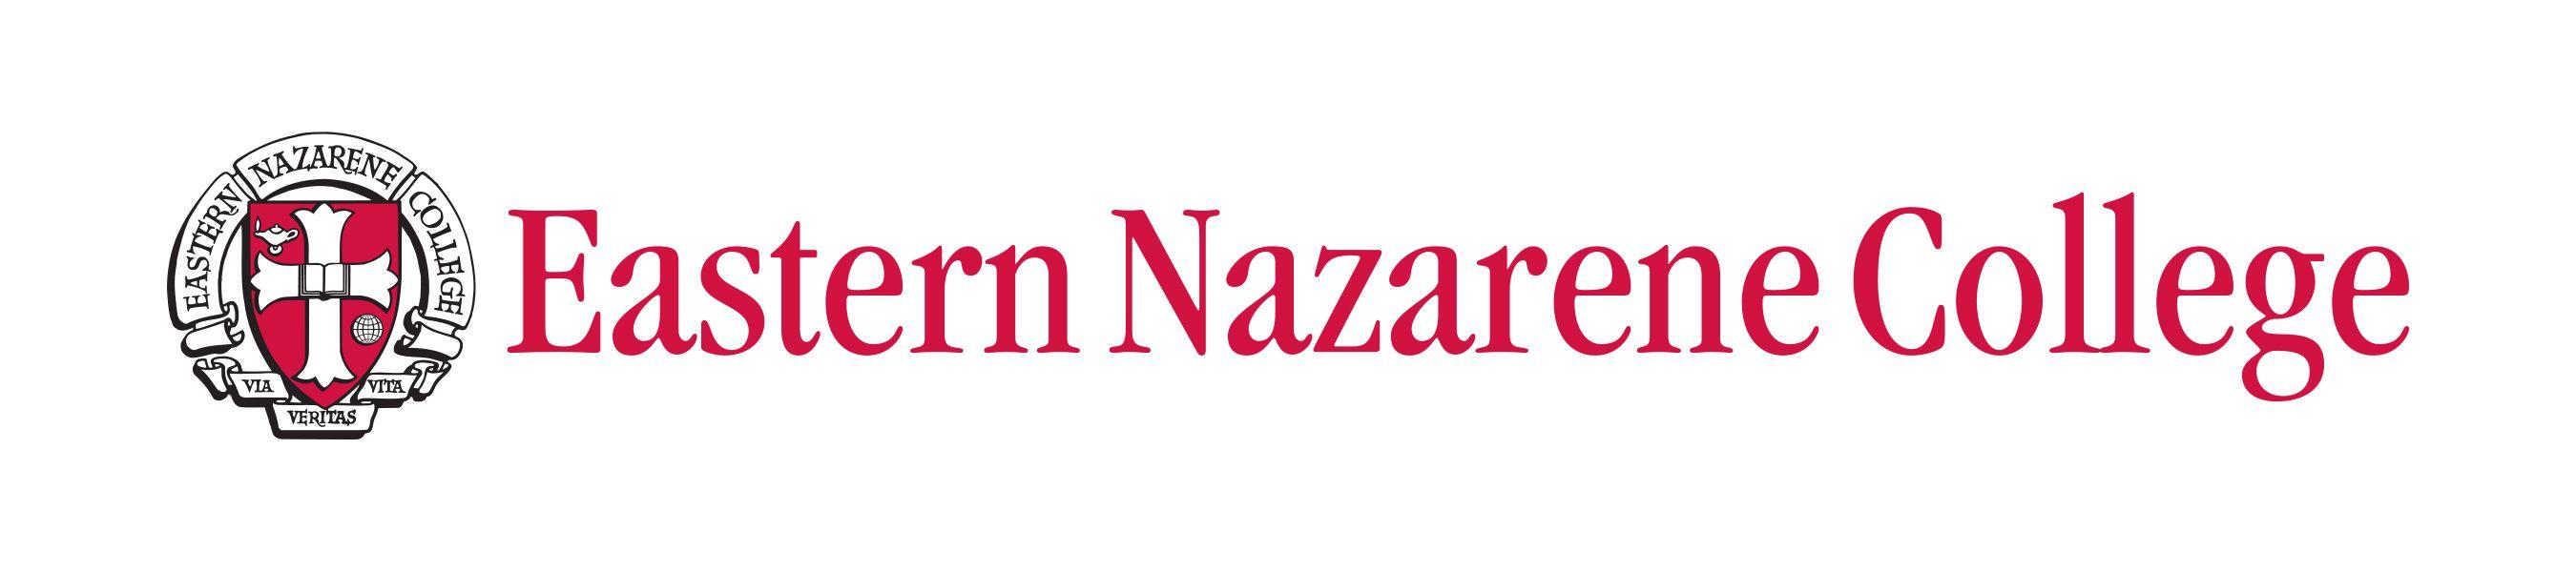 ENC Logo - Official ENC Logos - Eastern Nazarene College